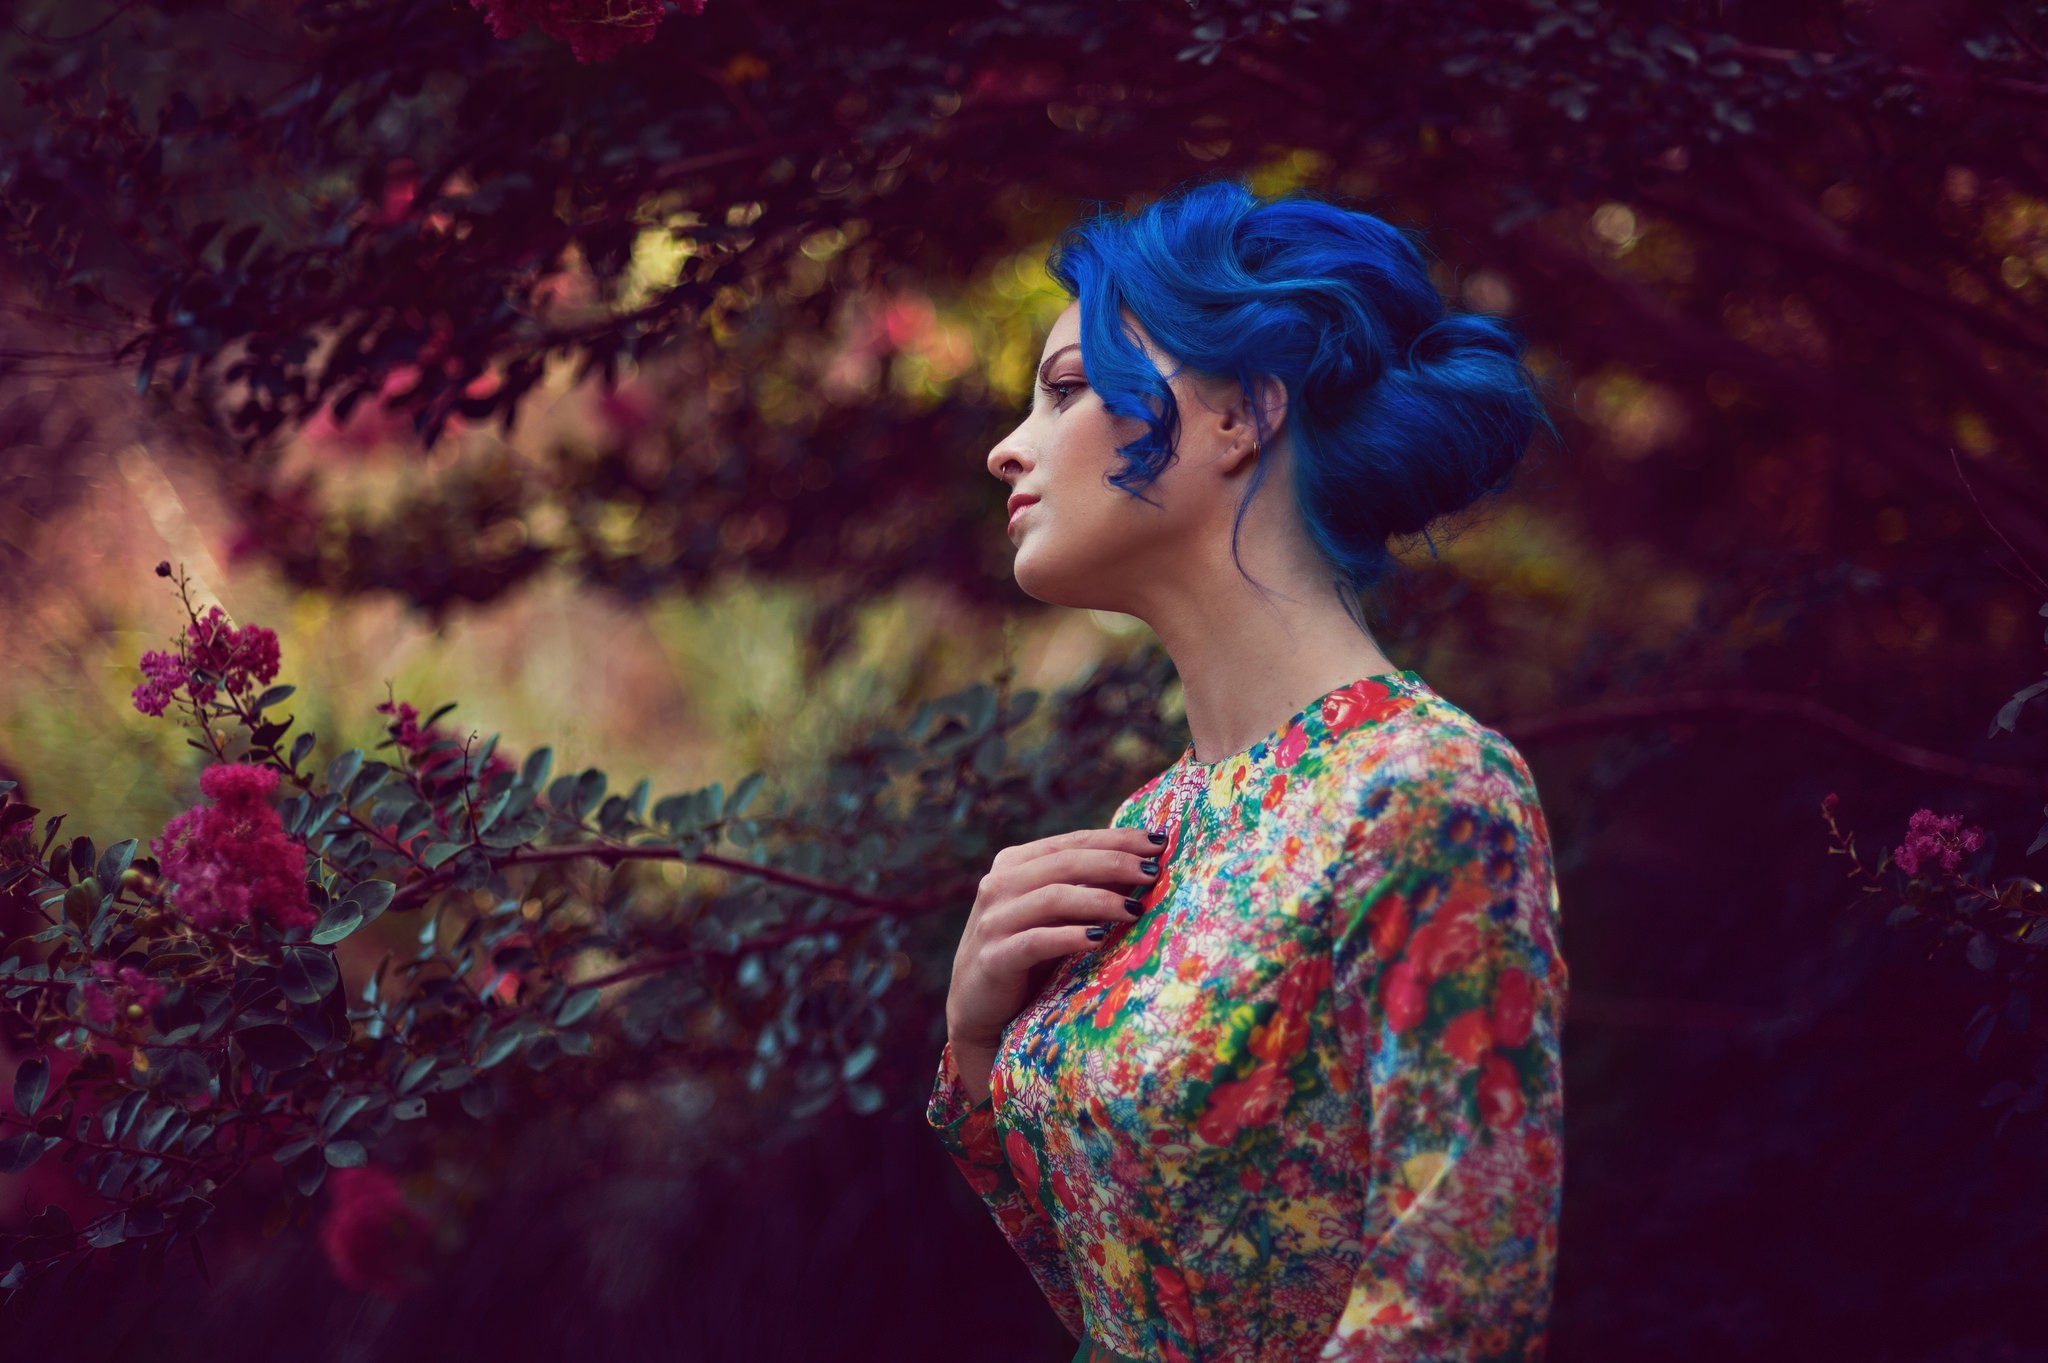 Картинка необычная женщина. Девушка с синими волосами. Фотосессия с синими волосами. Красивая яркая девушка. Фотосессия с яркими волосами.